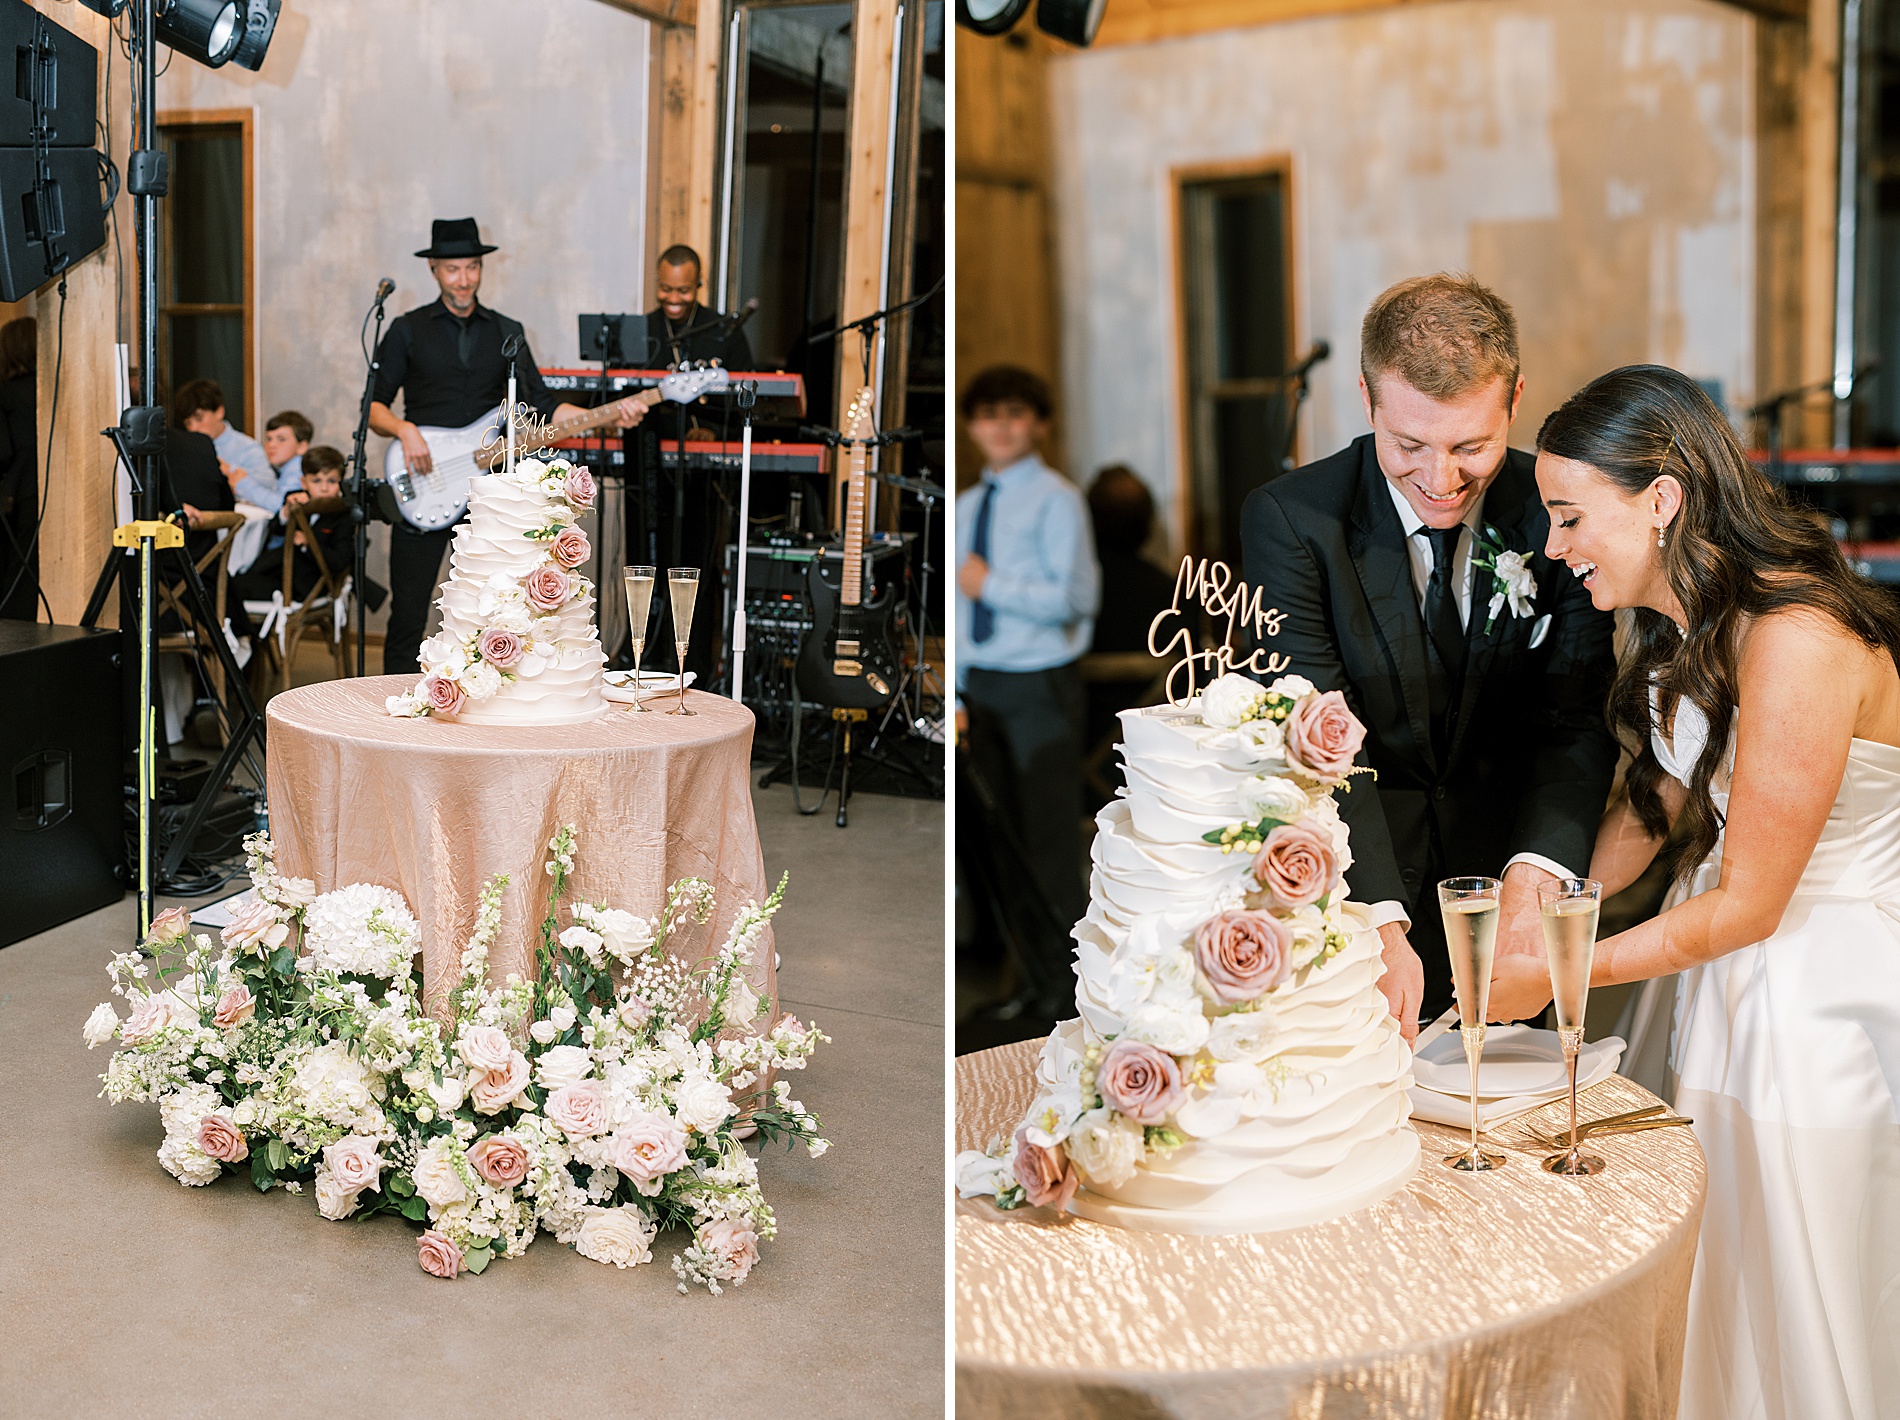 newlyweds cut wedding cake